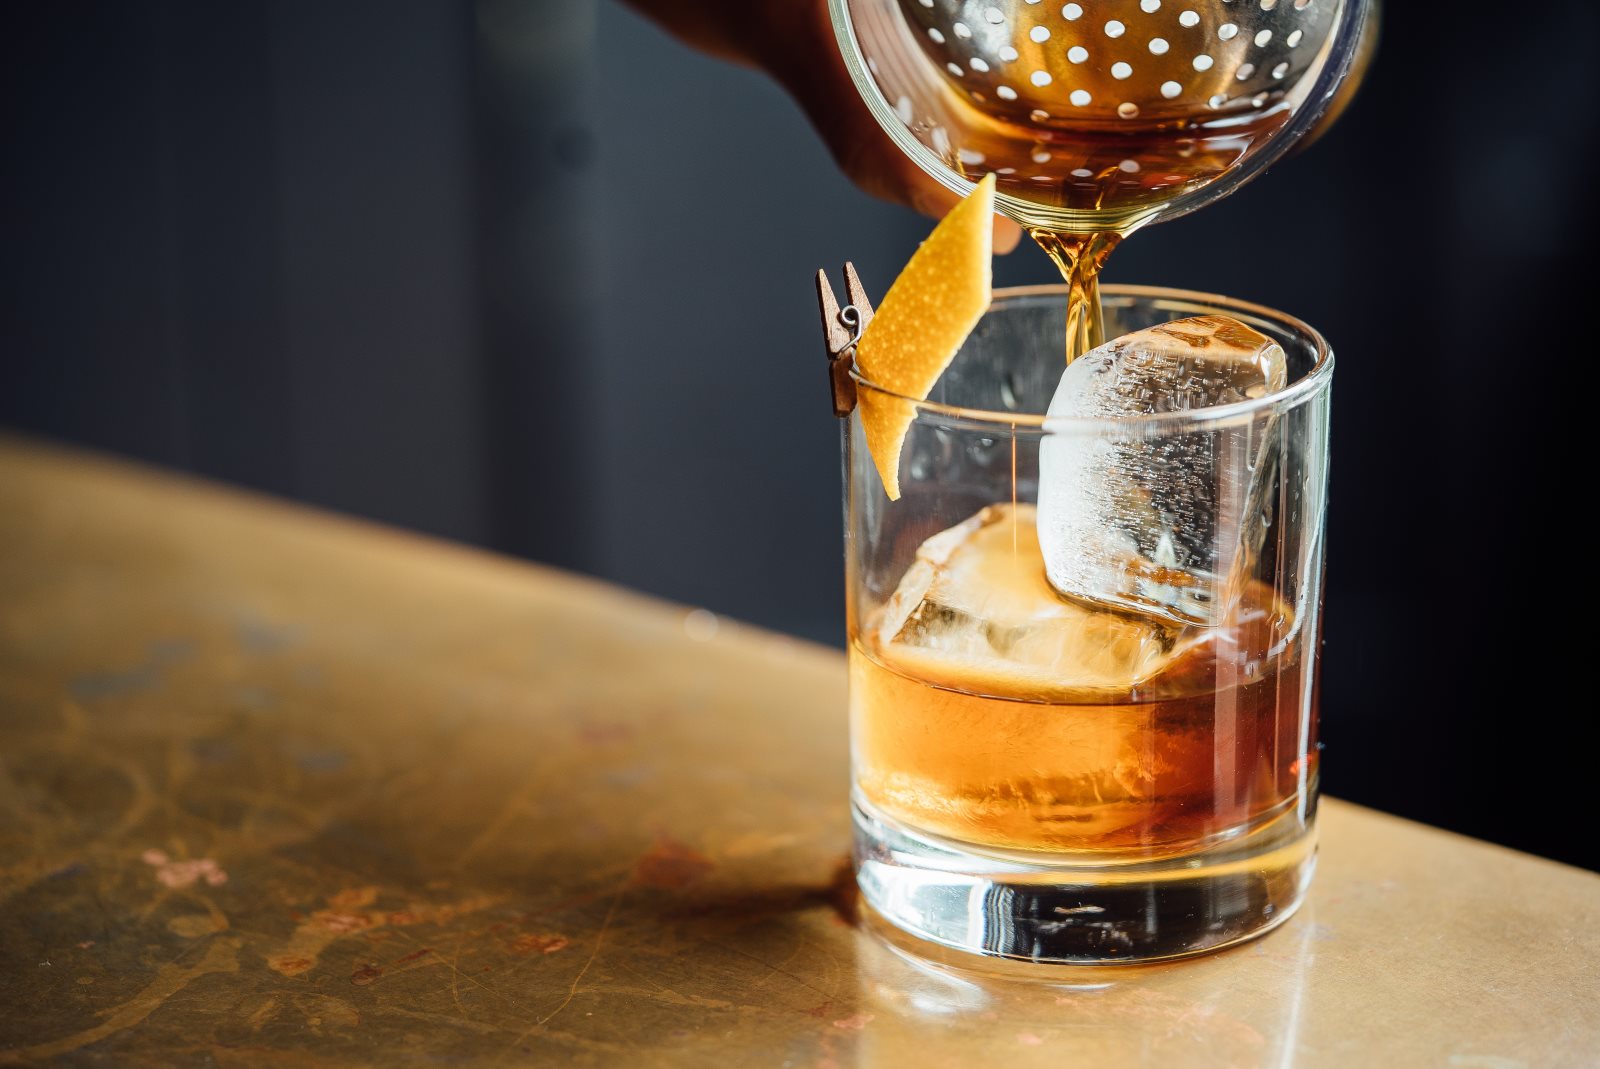 Z czym pić Whisky (zamiast coli)? 5 sprawdzonych drinków